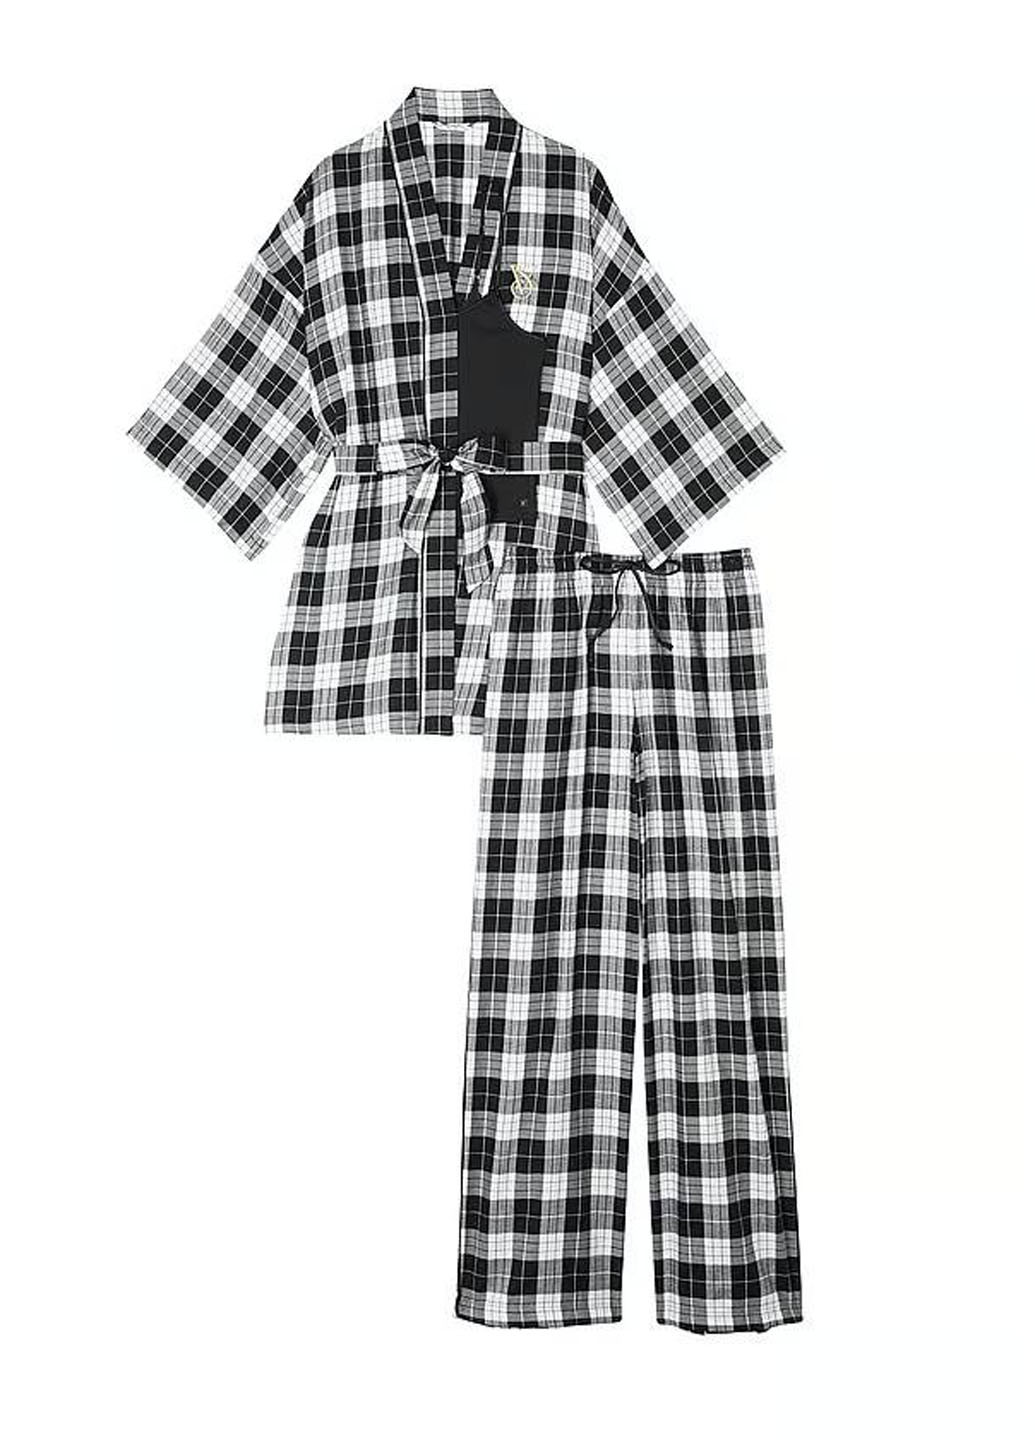 Черно-белая всесезон пижама (майка, халат, брюки) майка + брюки Victoria's Secret